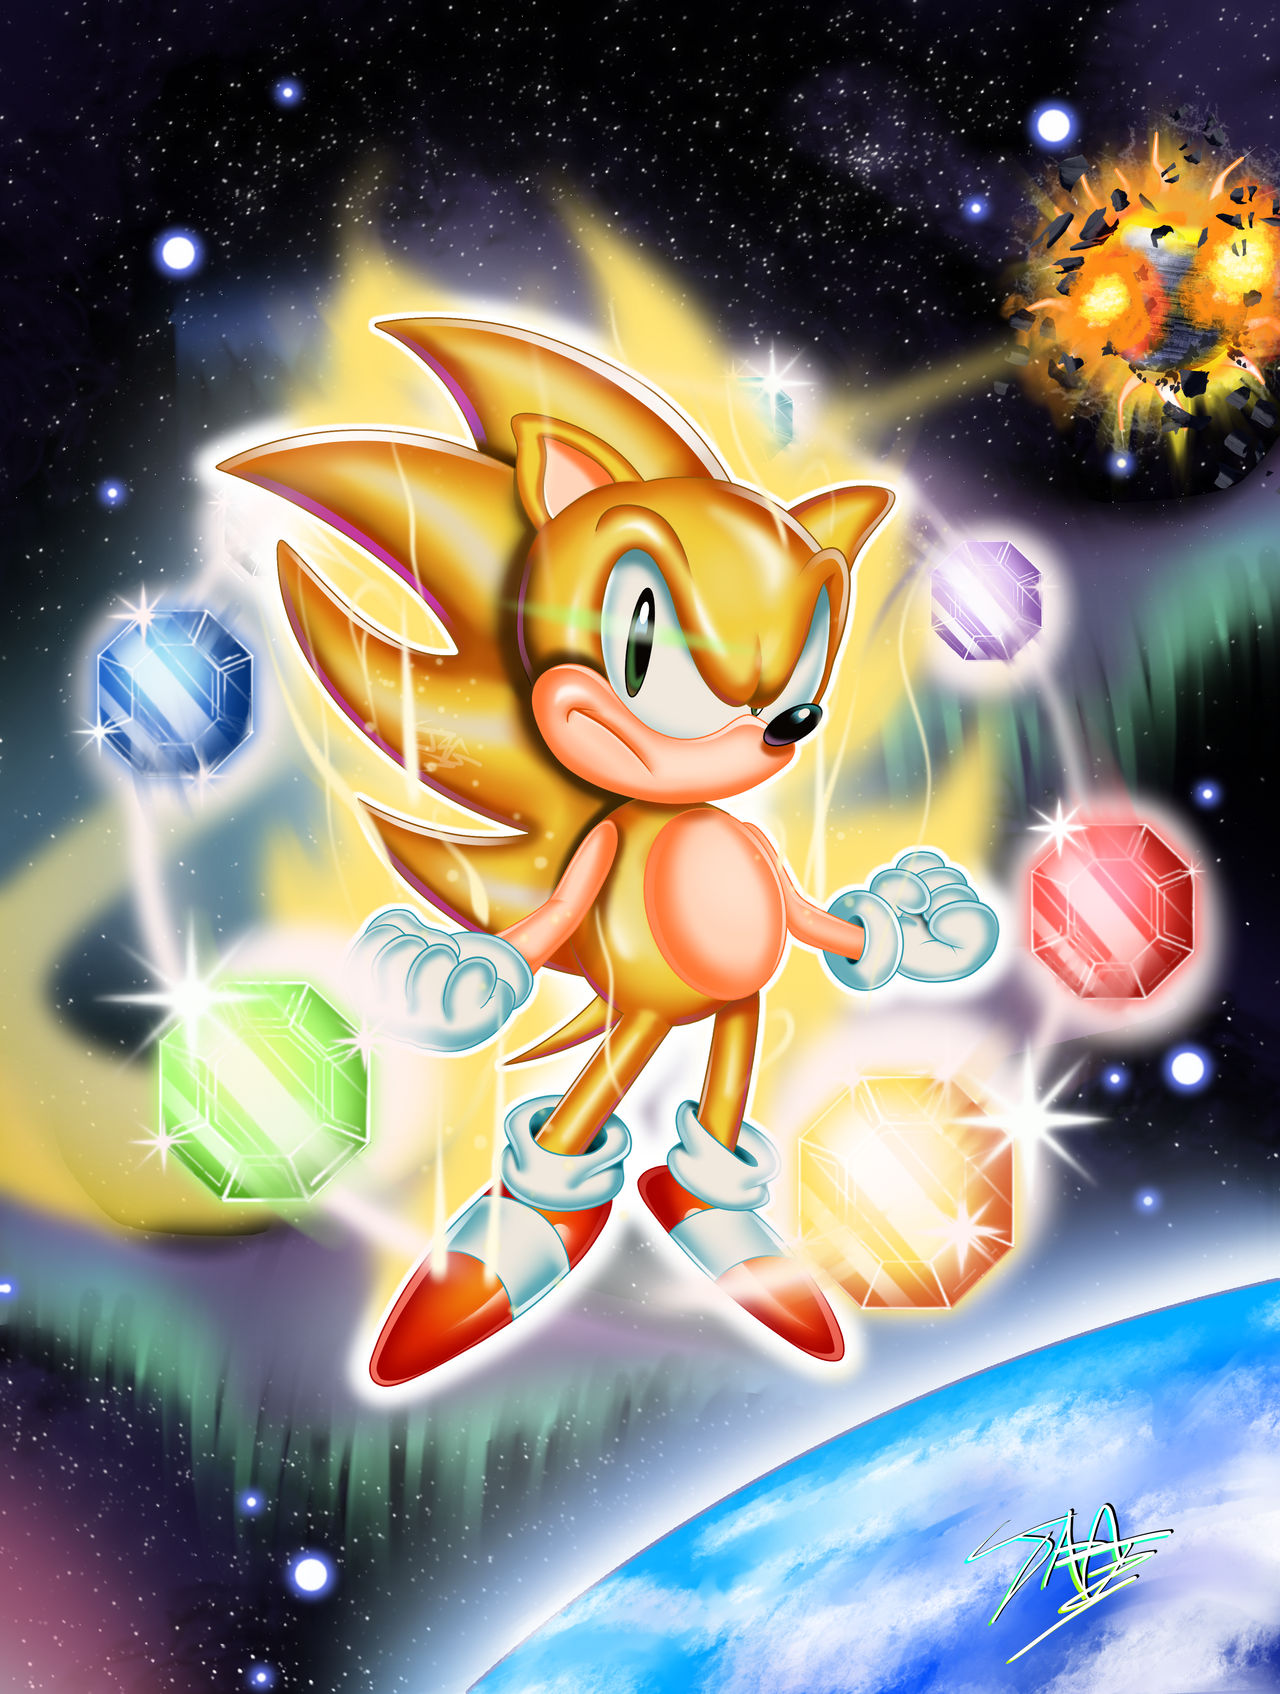 STH] Super Sonic 2 by MechatheTecha on DeviantArt